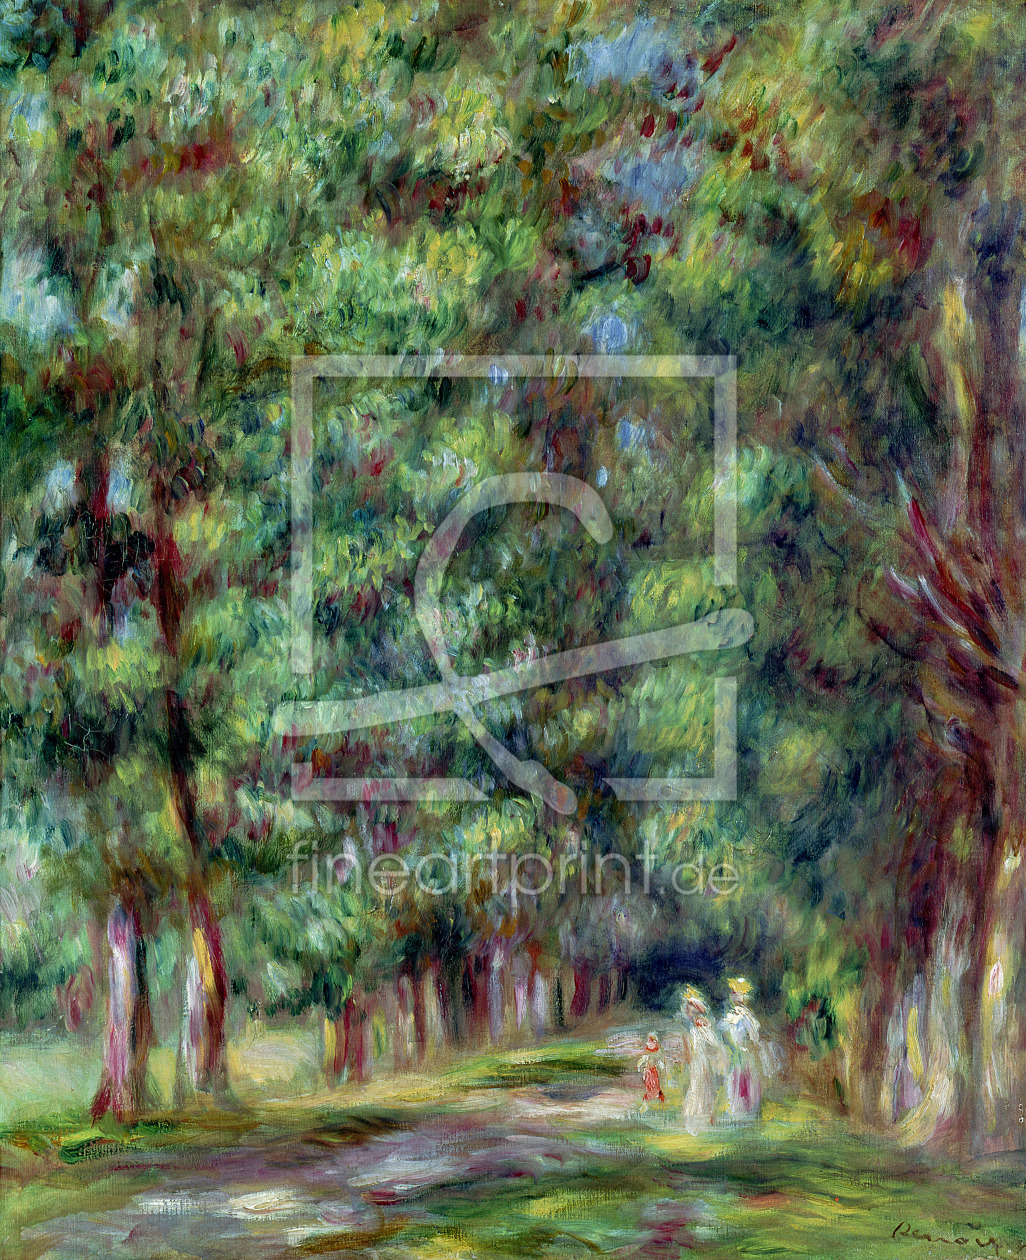 Bild-Nr.: 31001144 Path in a Wood, 1910 erstellt von Renoir, Pierre-Auguste